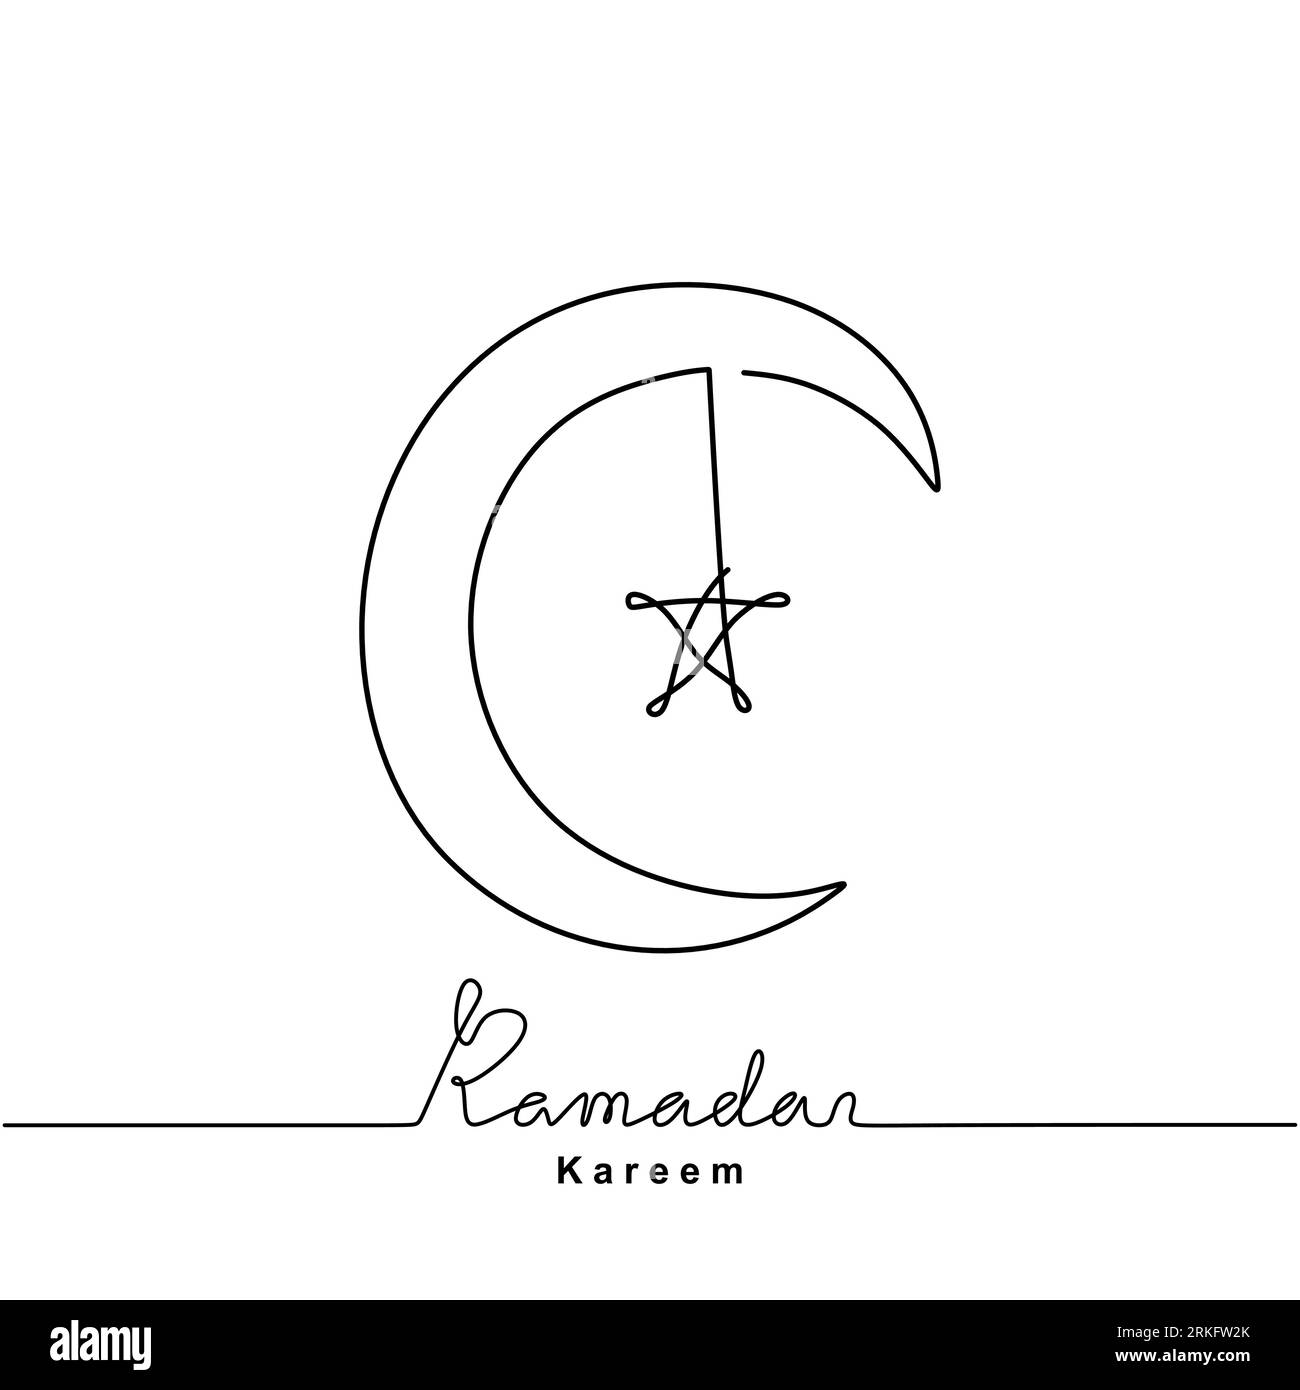 Disegno continuo di luna crescente e stella per Ramadan Kareem. Felice Eid mubarak. Tema celebrativo del Festival Islamico isolato su sfondo bianco Illustrazione Vettoriale